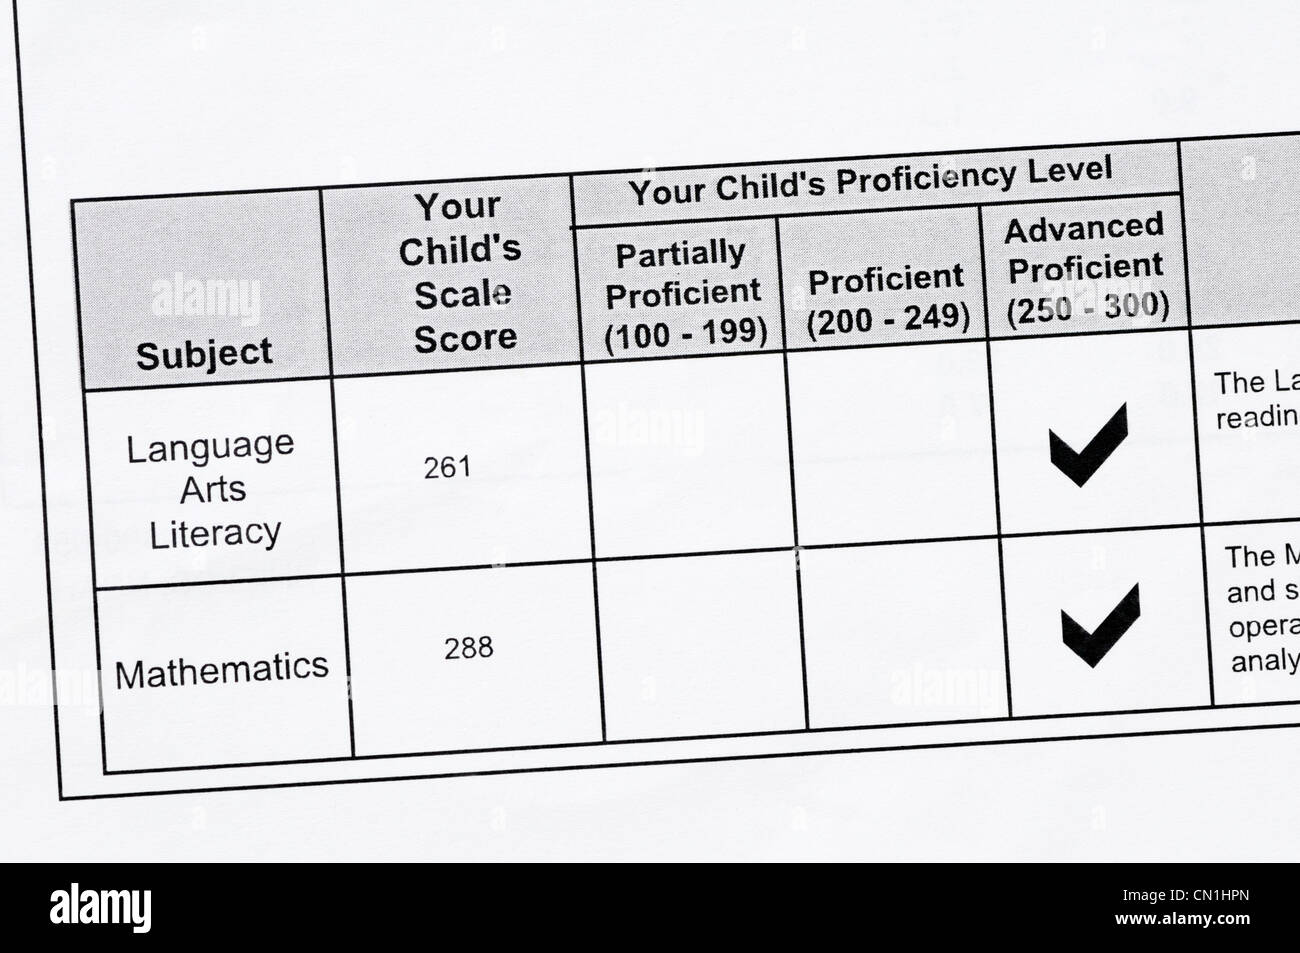 Student-Bewertungsbericht standardisiert staatlichen Tests in Mathematik und Sprache Kunst. Der Student erzielte das erweiterte Angebot für beide. Stockfoto